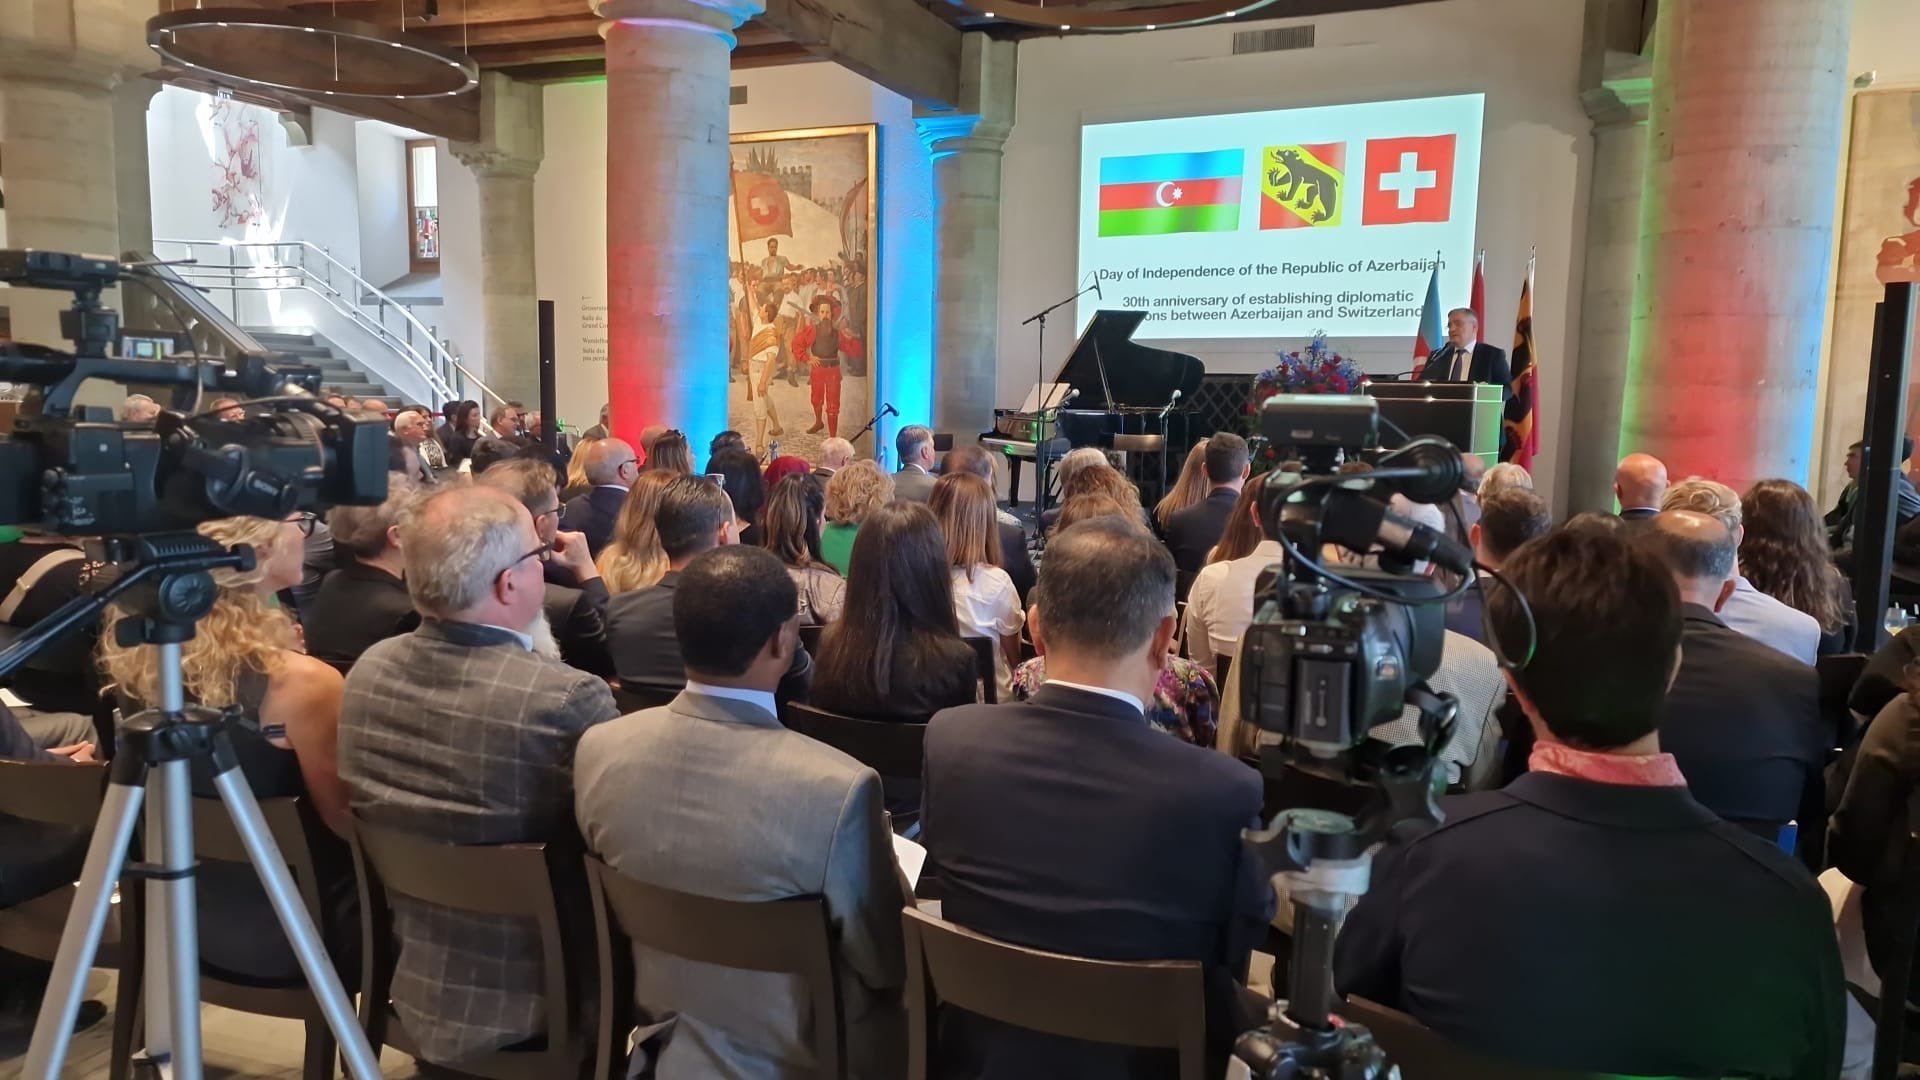 Die Schweiz feiert den Unabhängigkeitstag Aserbaidschans [PHOTO]